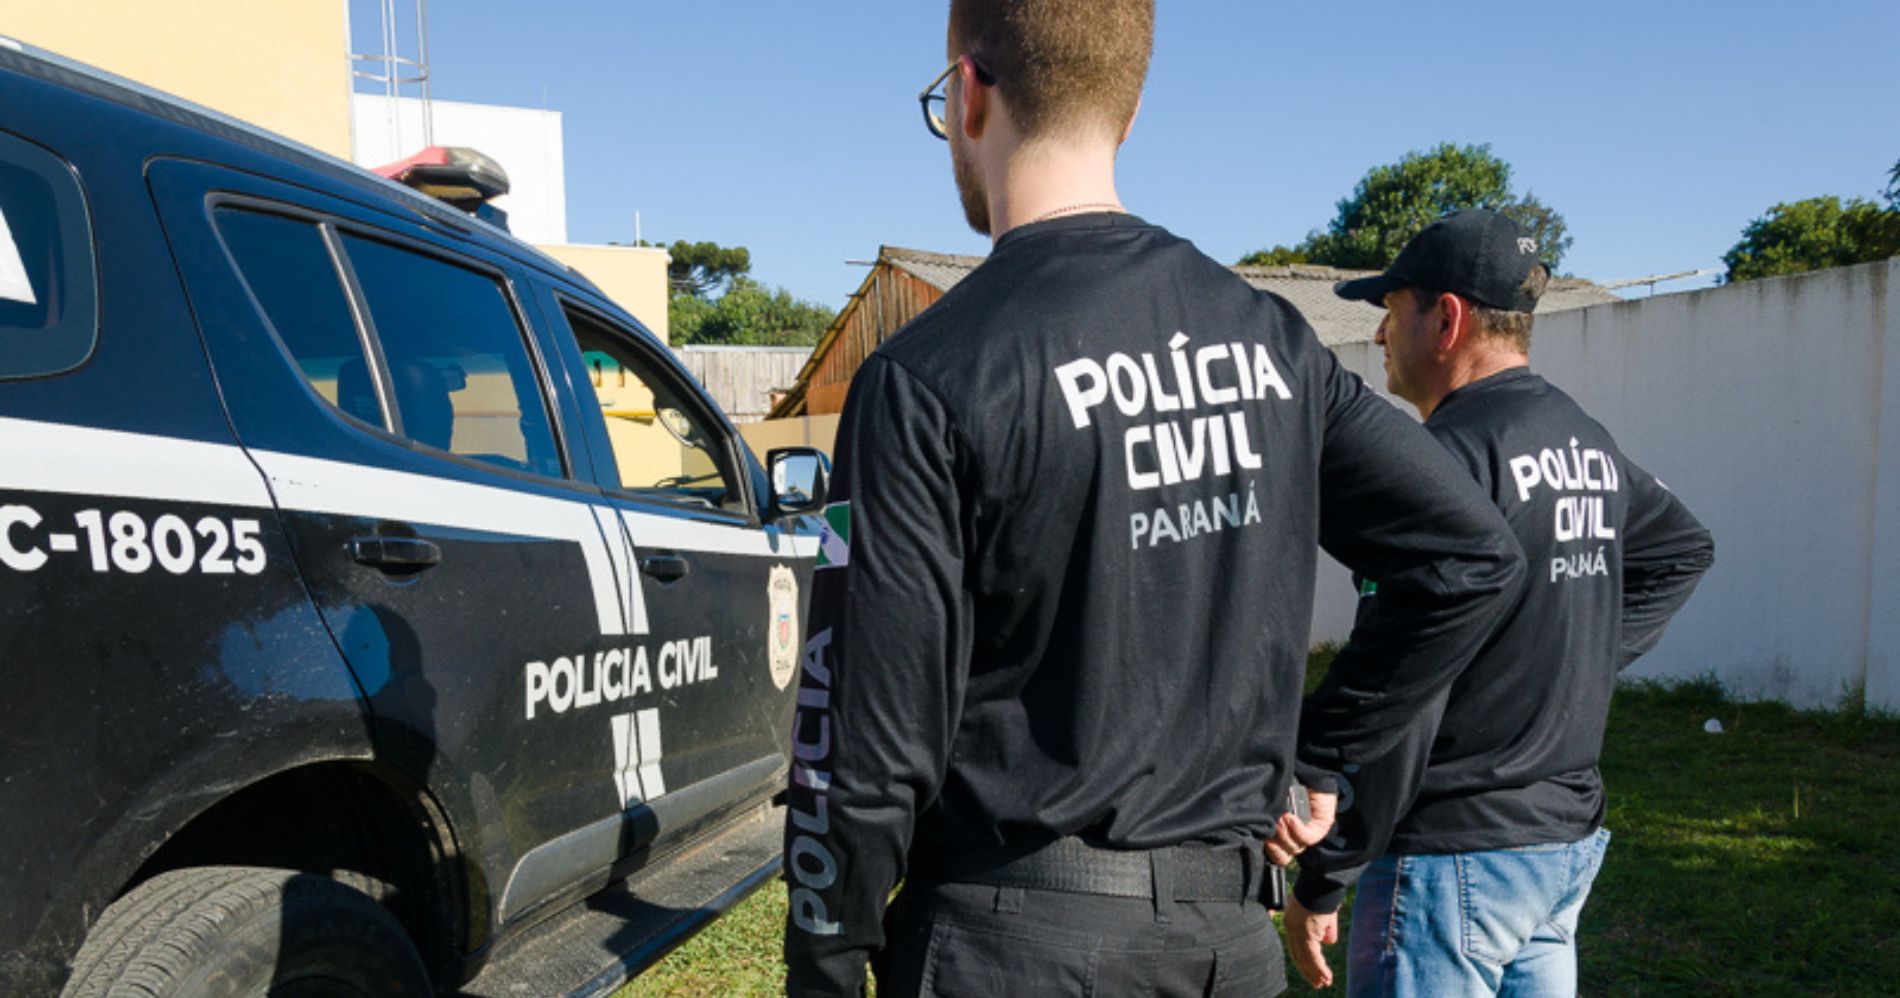 PCPR e PMPR prendem sete pessoas em operação de combate ao tráfico de drogas em Curitiba e RMC